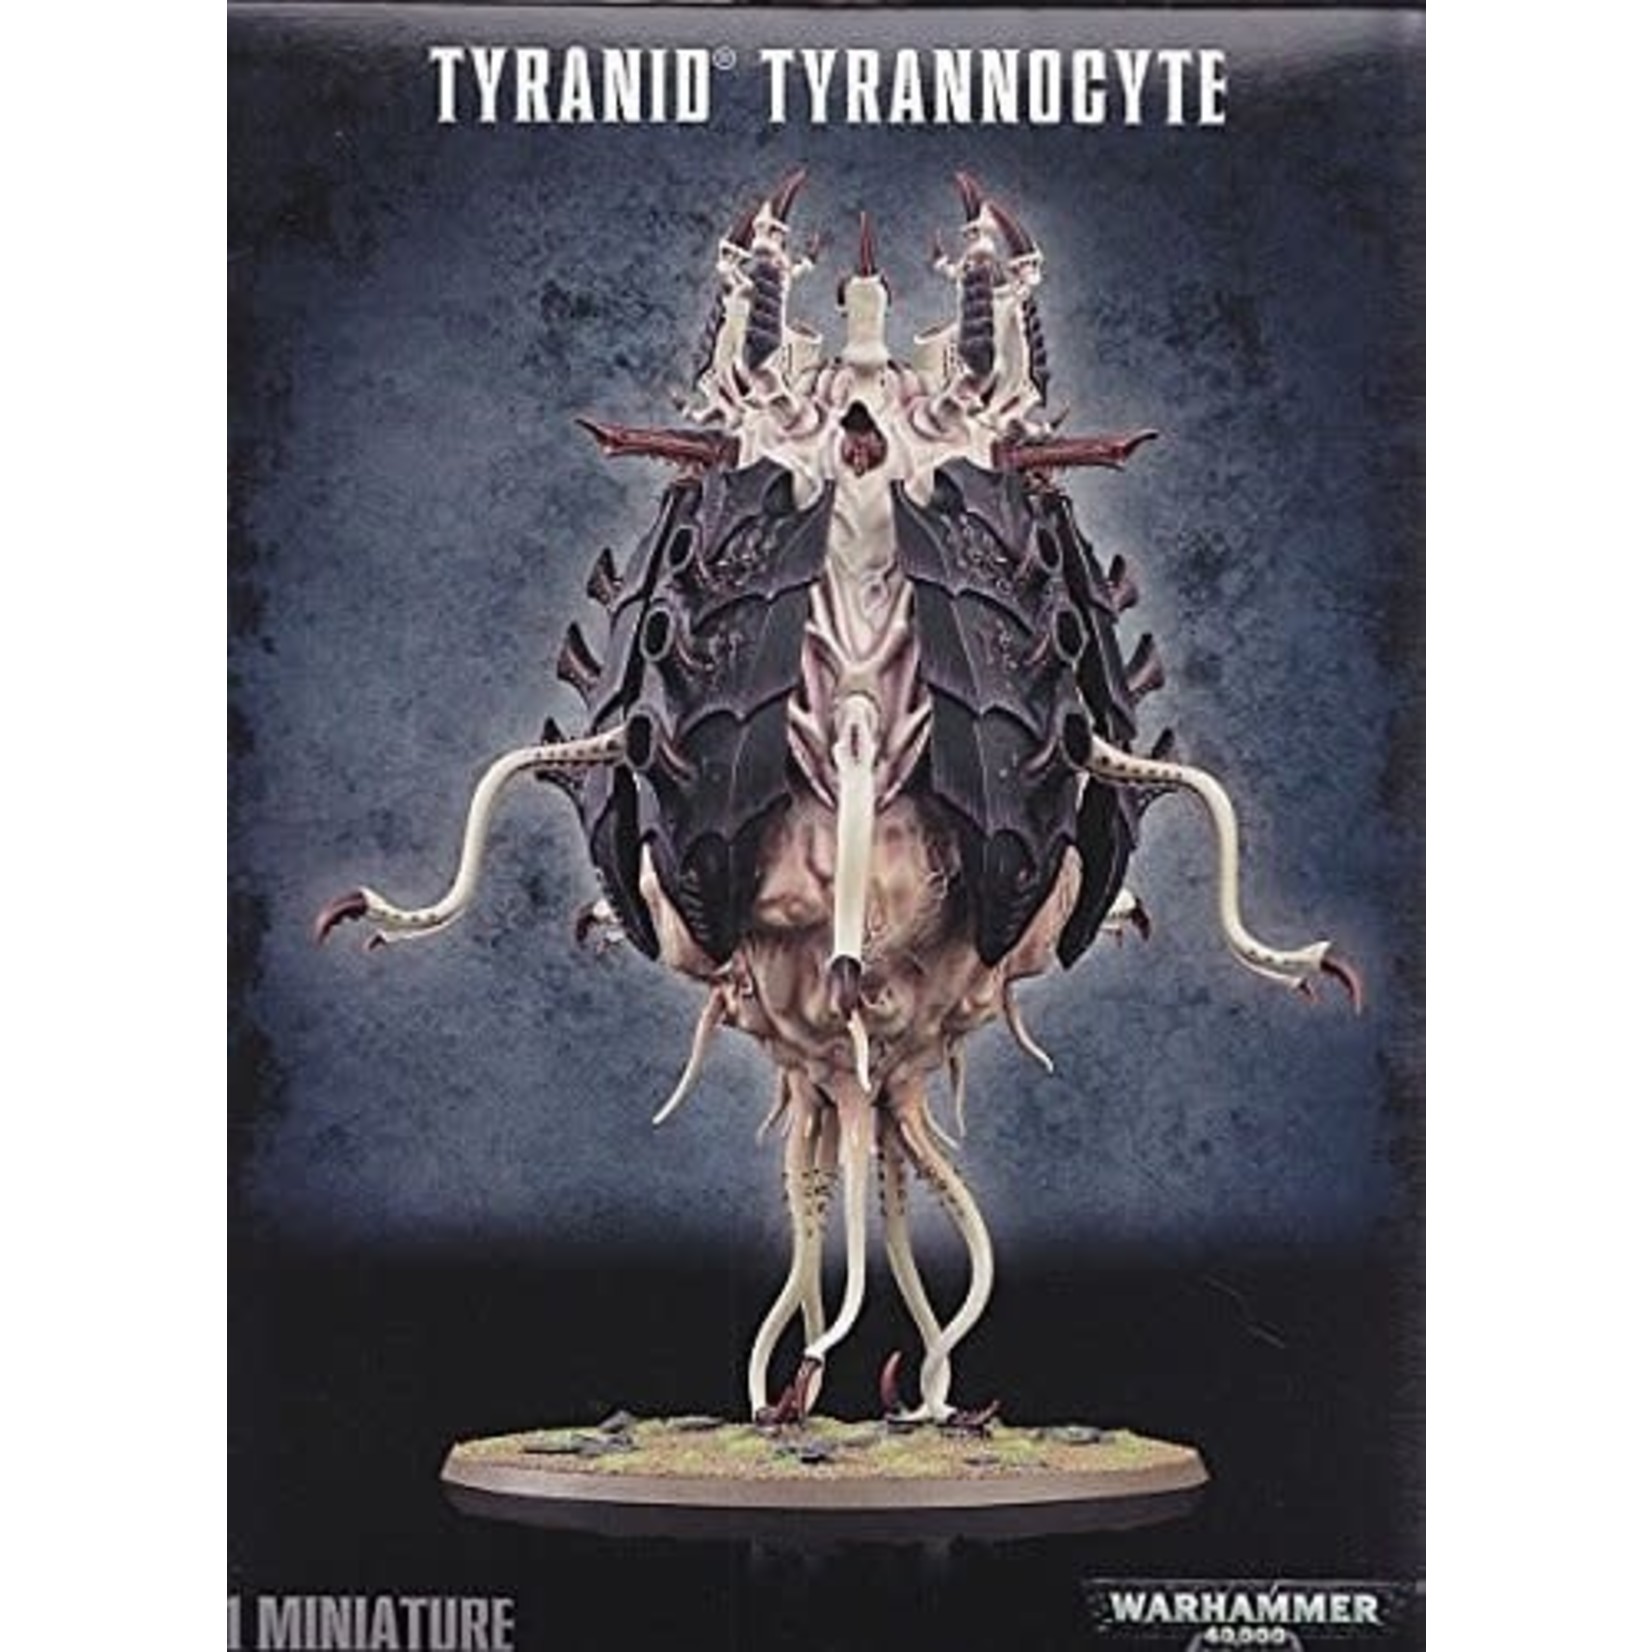 Tyranids Tyranids Tyrannocyte